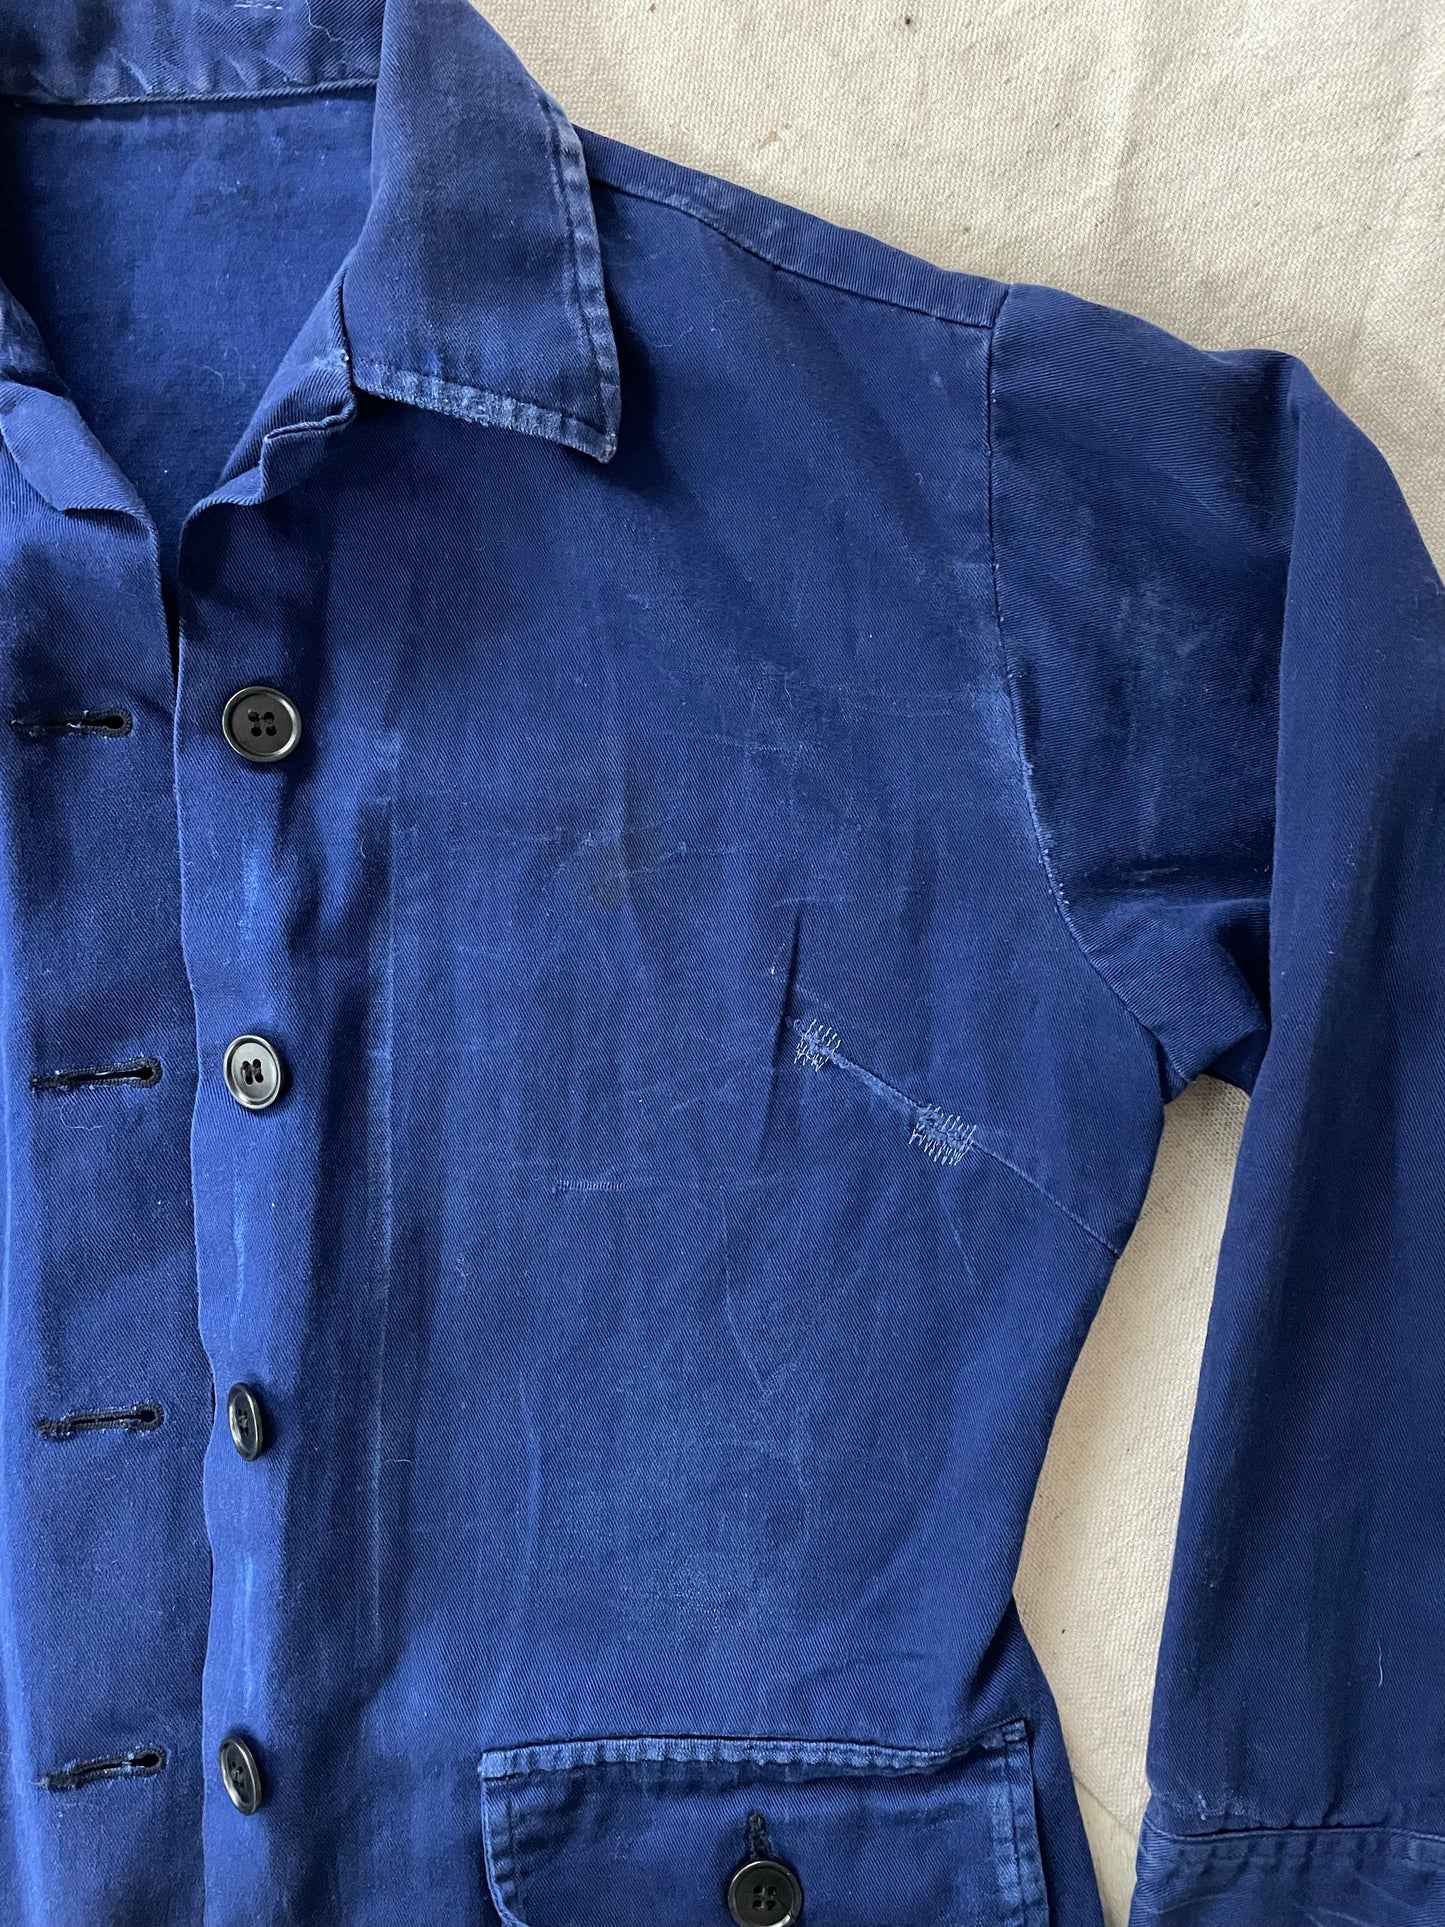 French Chore Coat, Work Shirt, Shacket